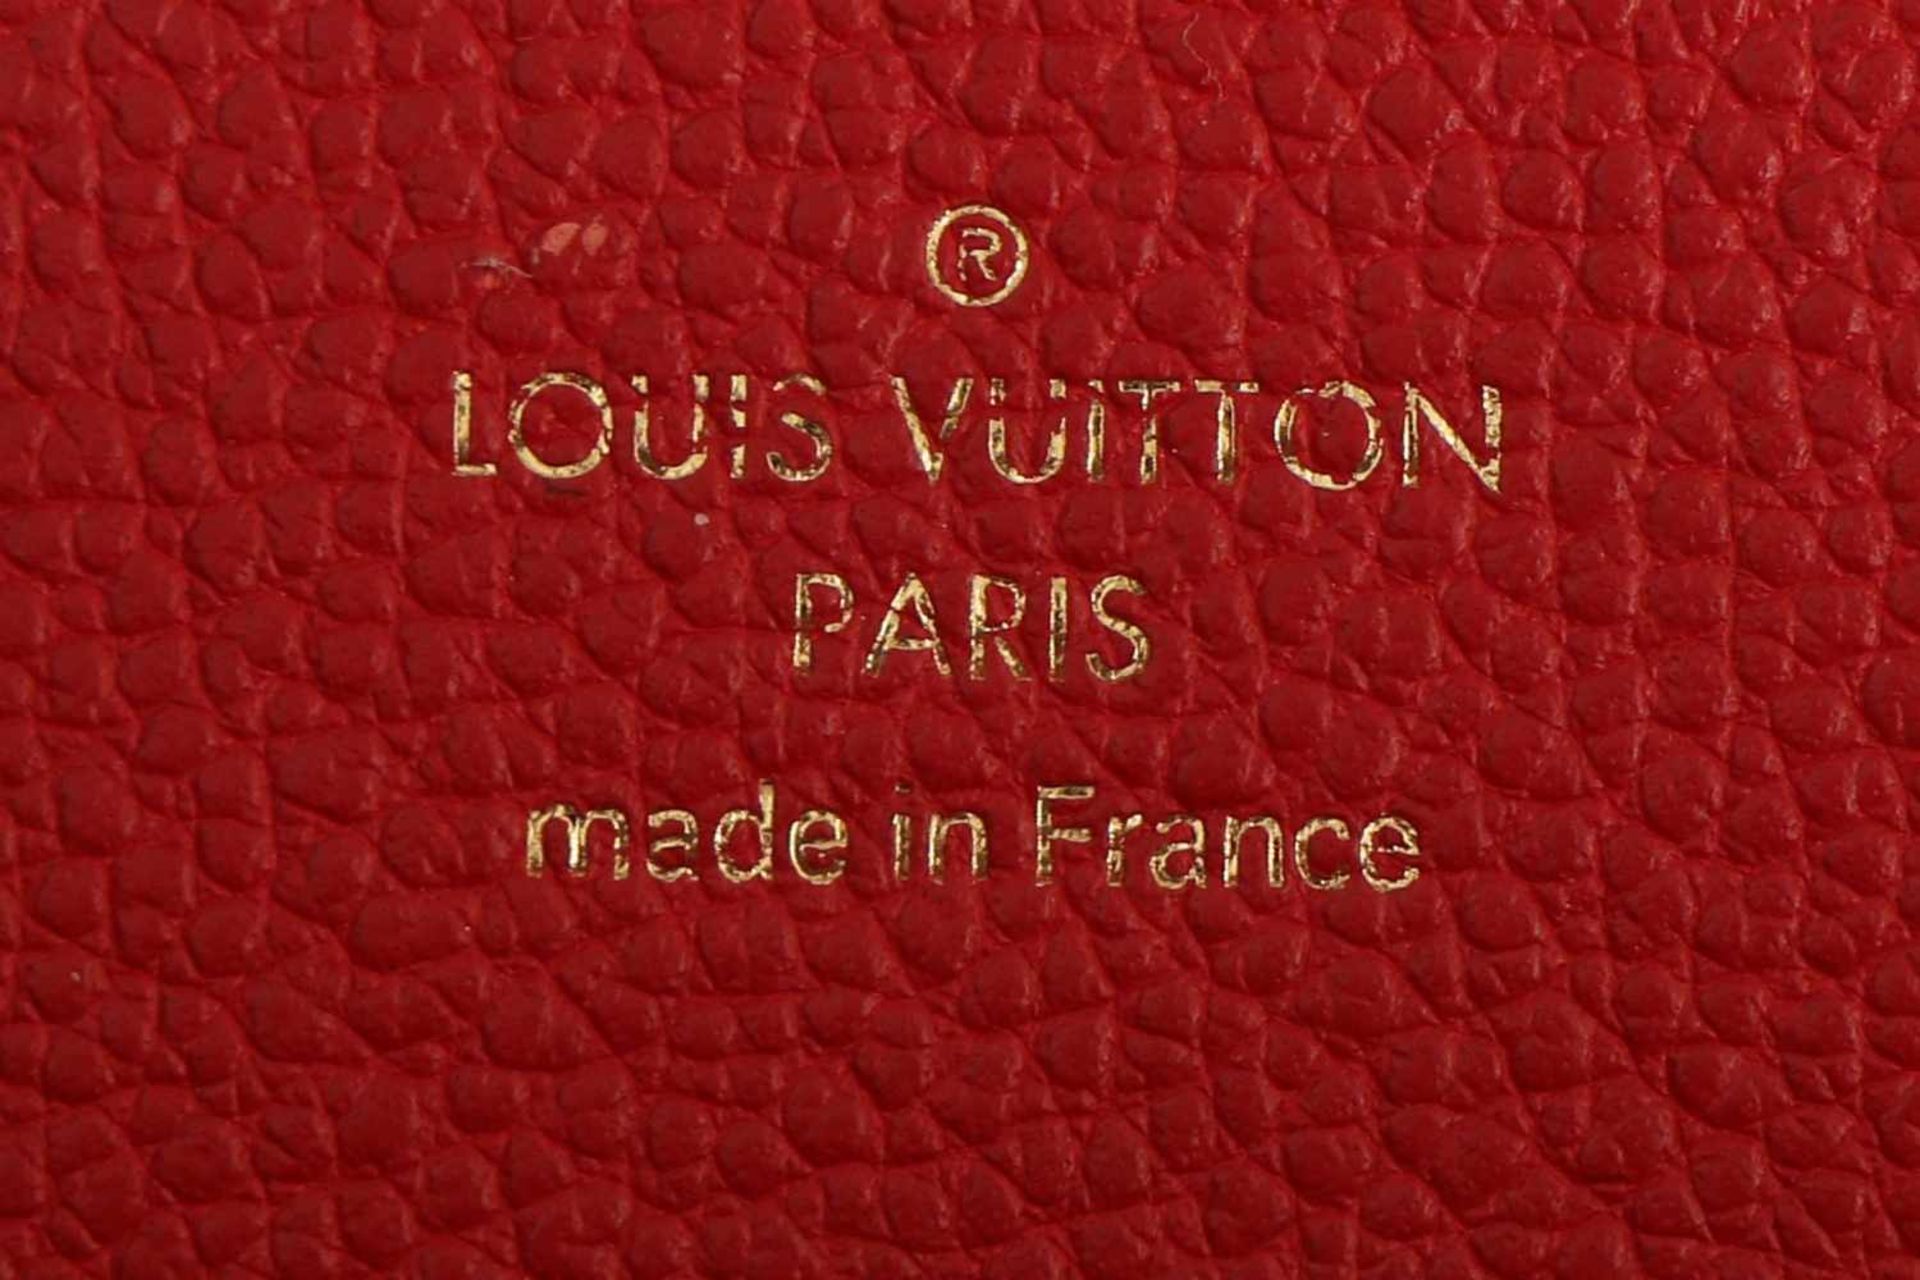 LOUIS VUITTON ¨Venus cerise¨ Handtascherechteckige Form mit 2 kurzen Tragehenkeln und einem - Bild 2 aus 2